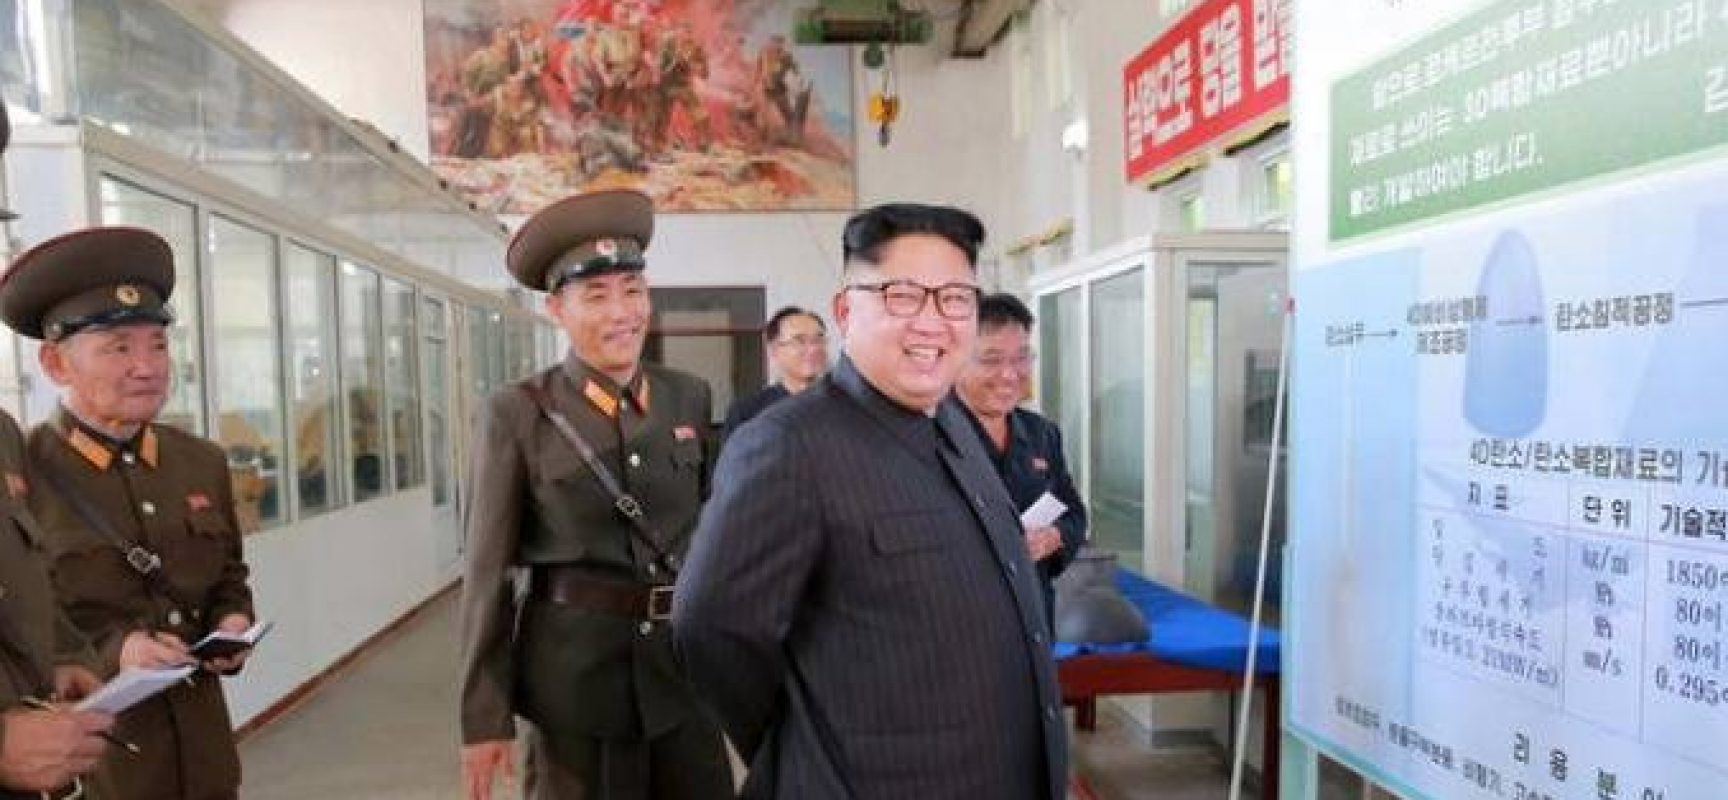 Kim Jong-un não morreu? Segundo Coreia do Sul, ele está “vivo e bem”